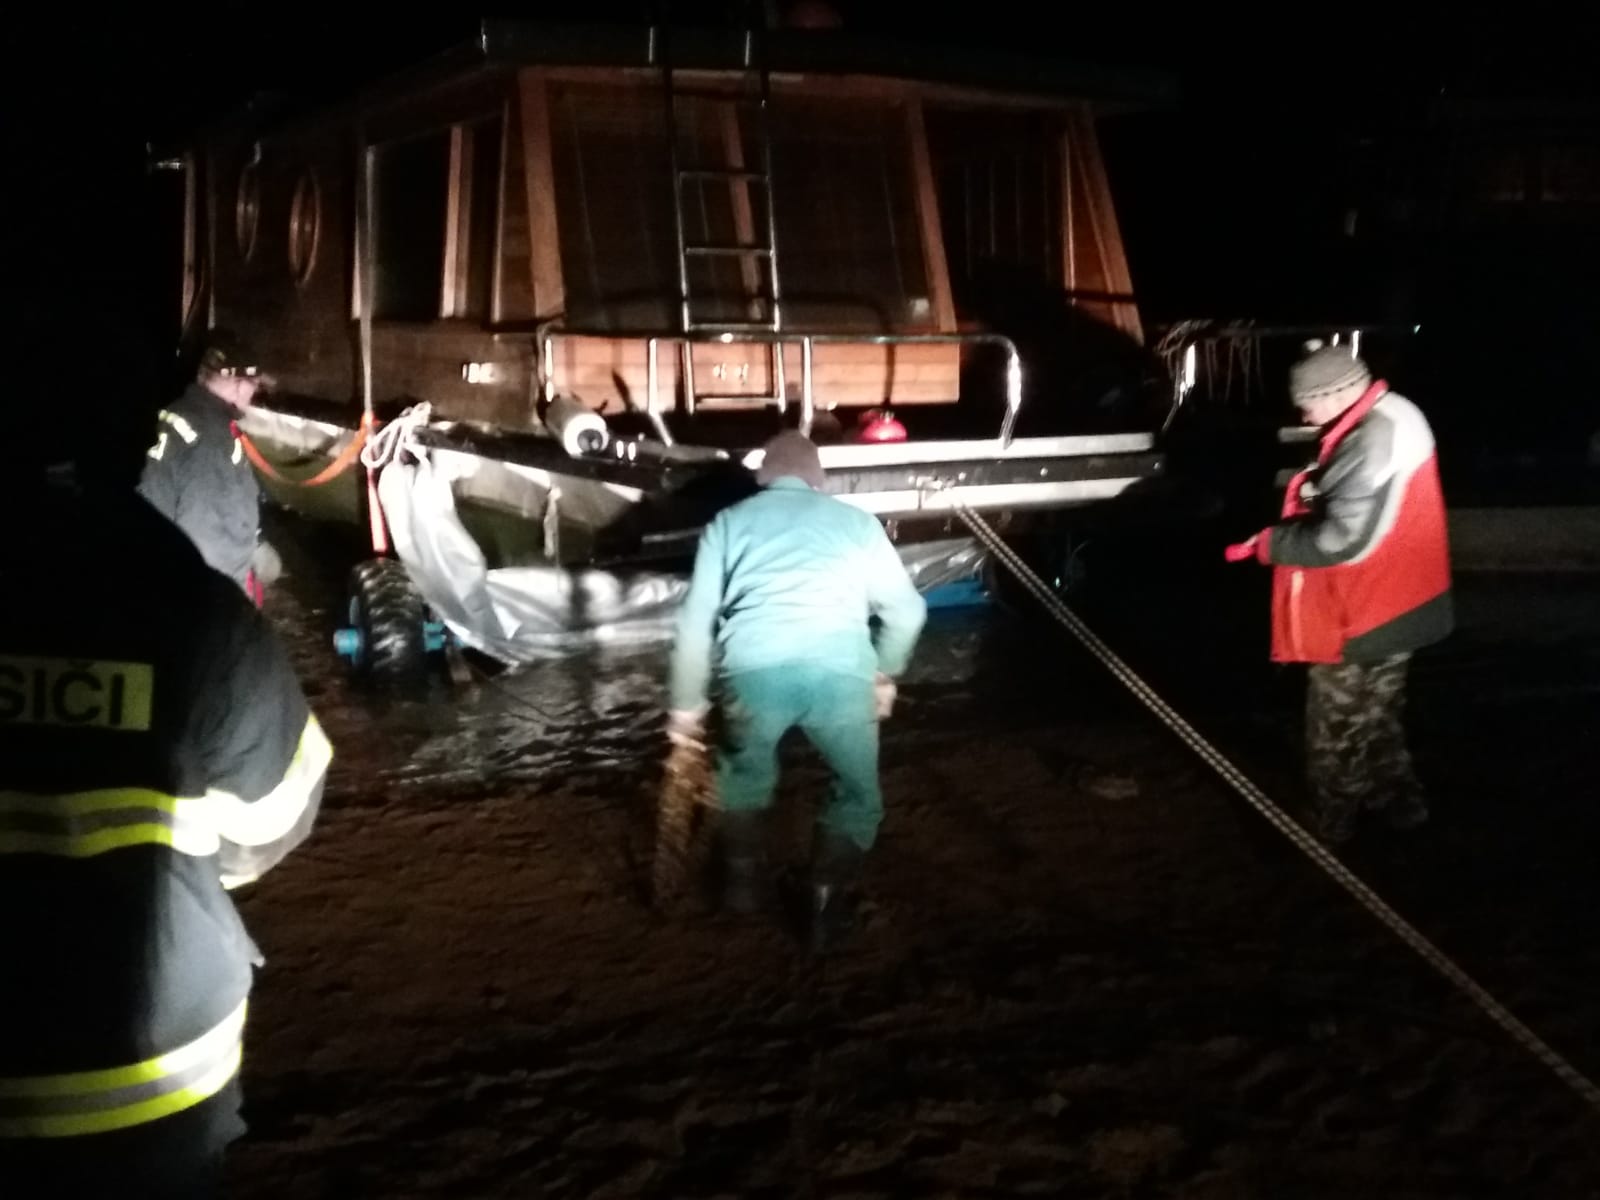 Vyzvednutí potopeného houseboatu, Radava - 5. a 6. 1. 2019 (8).jpg